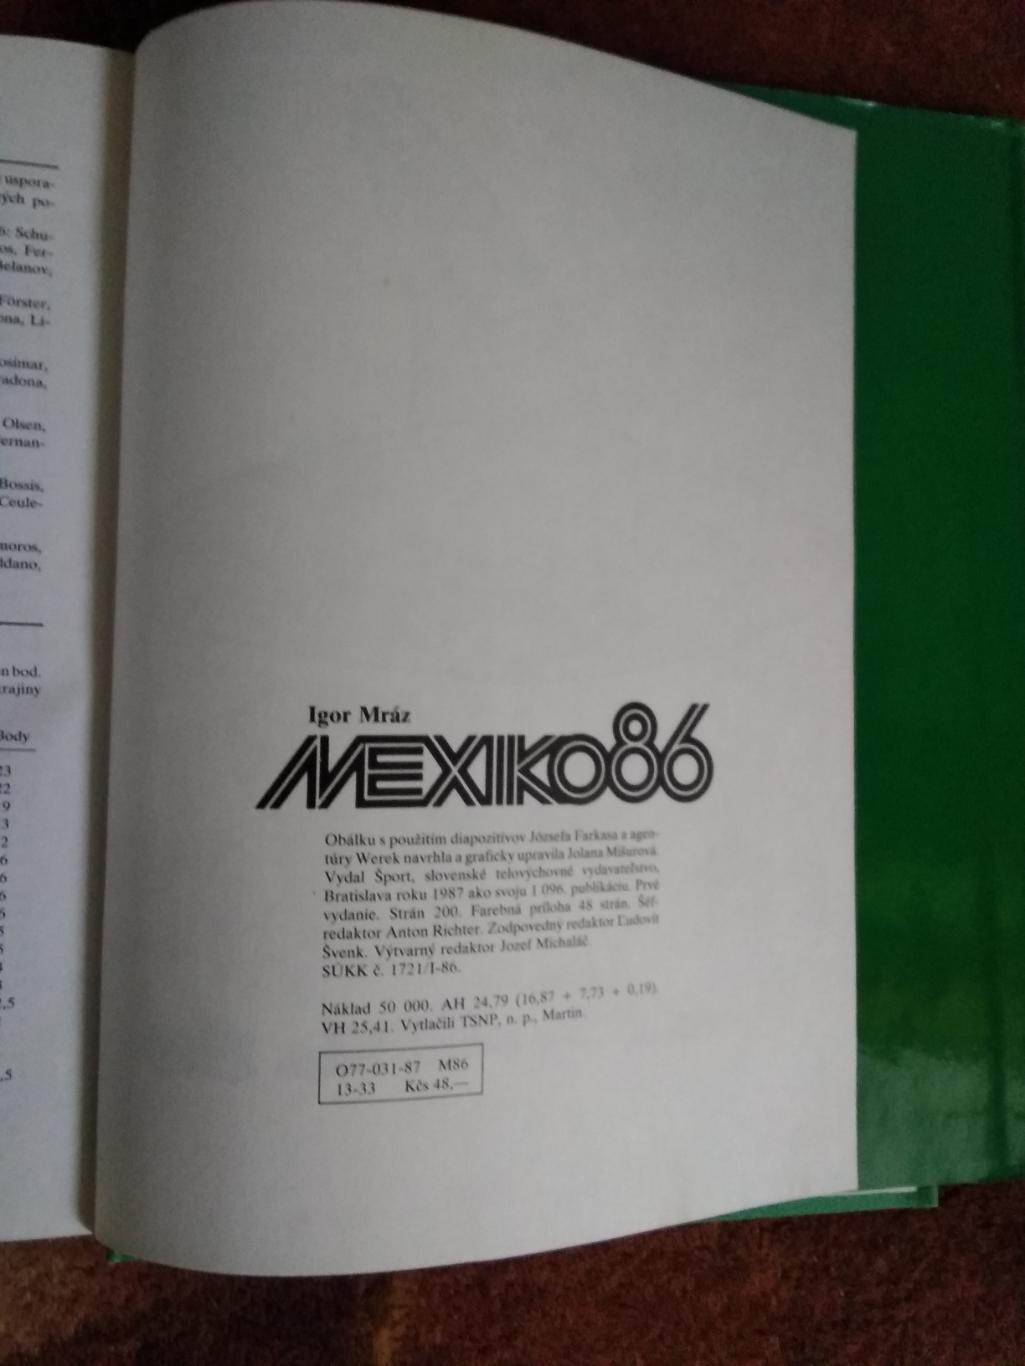 Чемпионат мира по футболу 1986.Мексика.Спорт Братислава 1987 г. 1